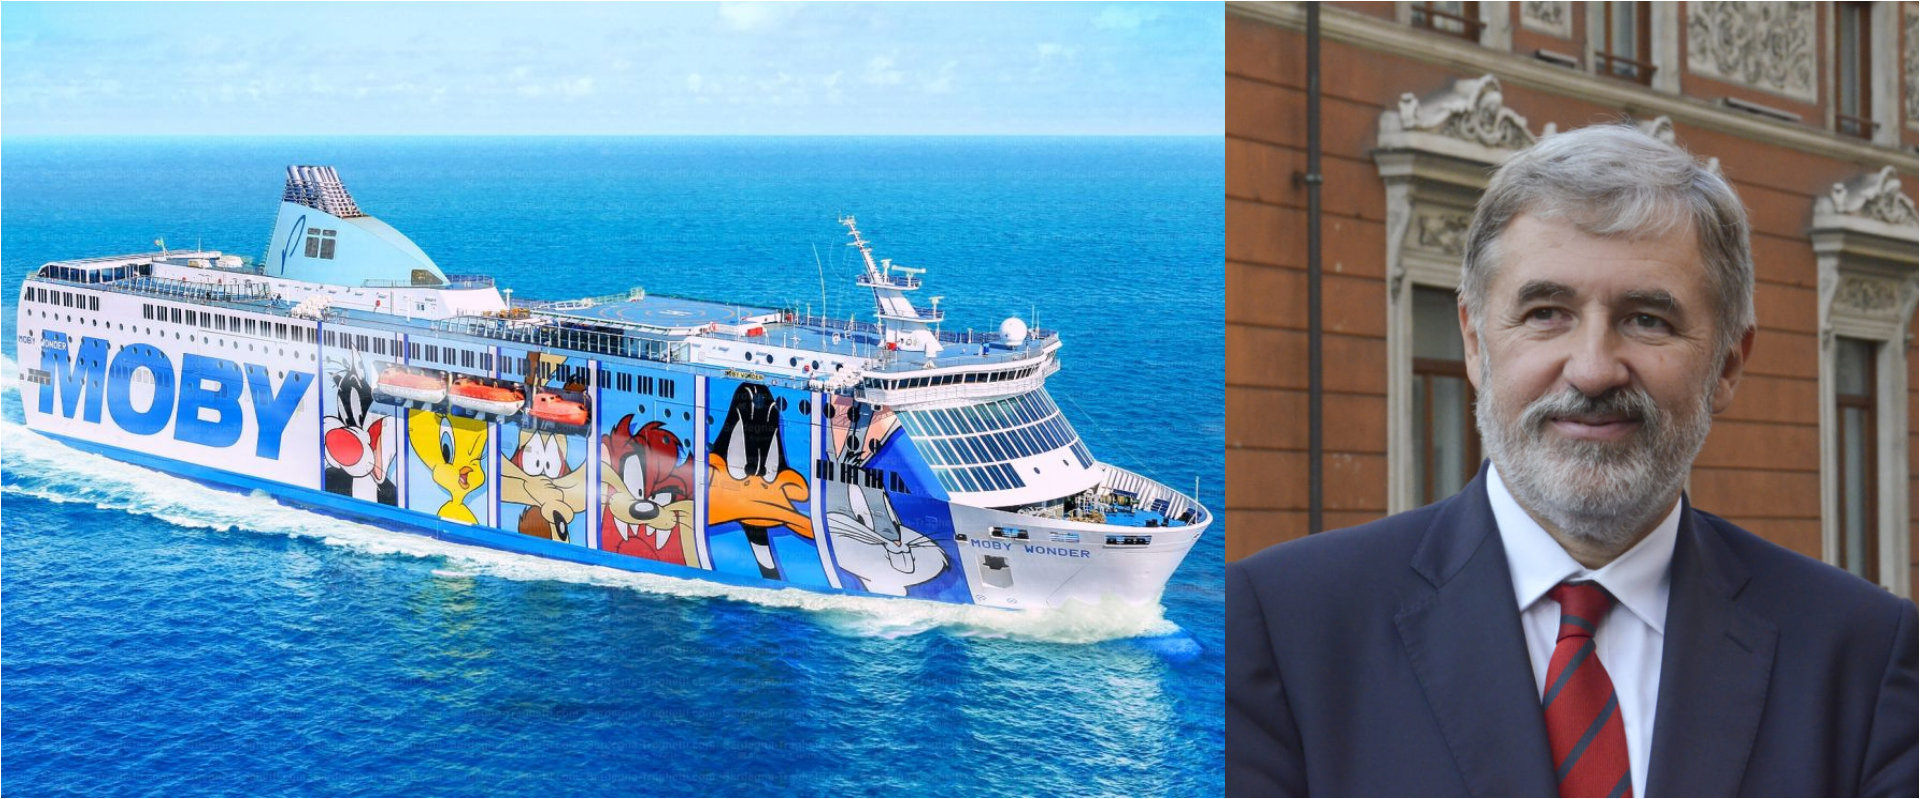 Traghetto bloccato in mare per due ore: a bordo anche il sindaco Bucci